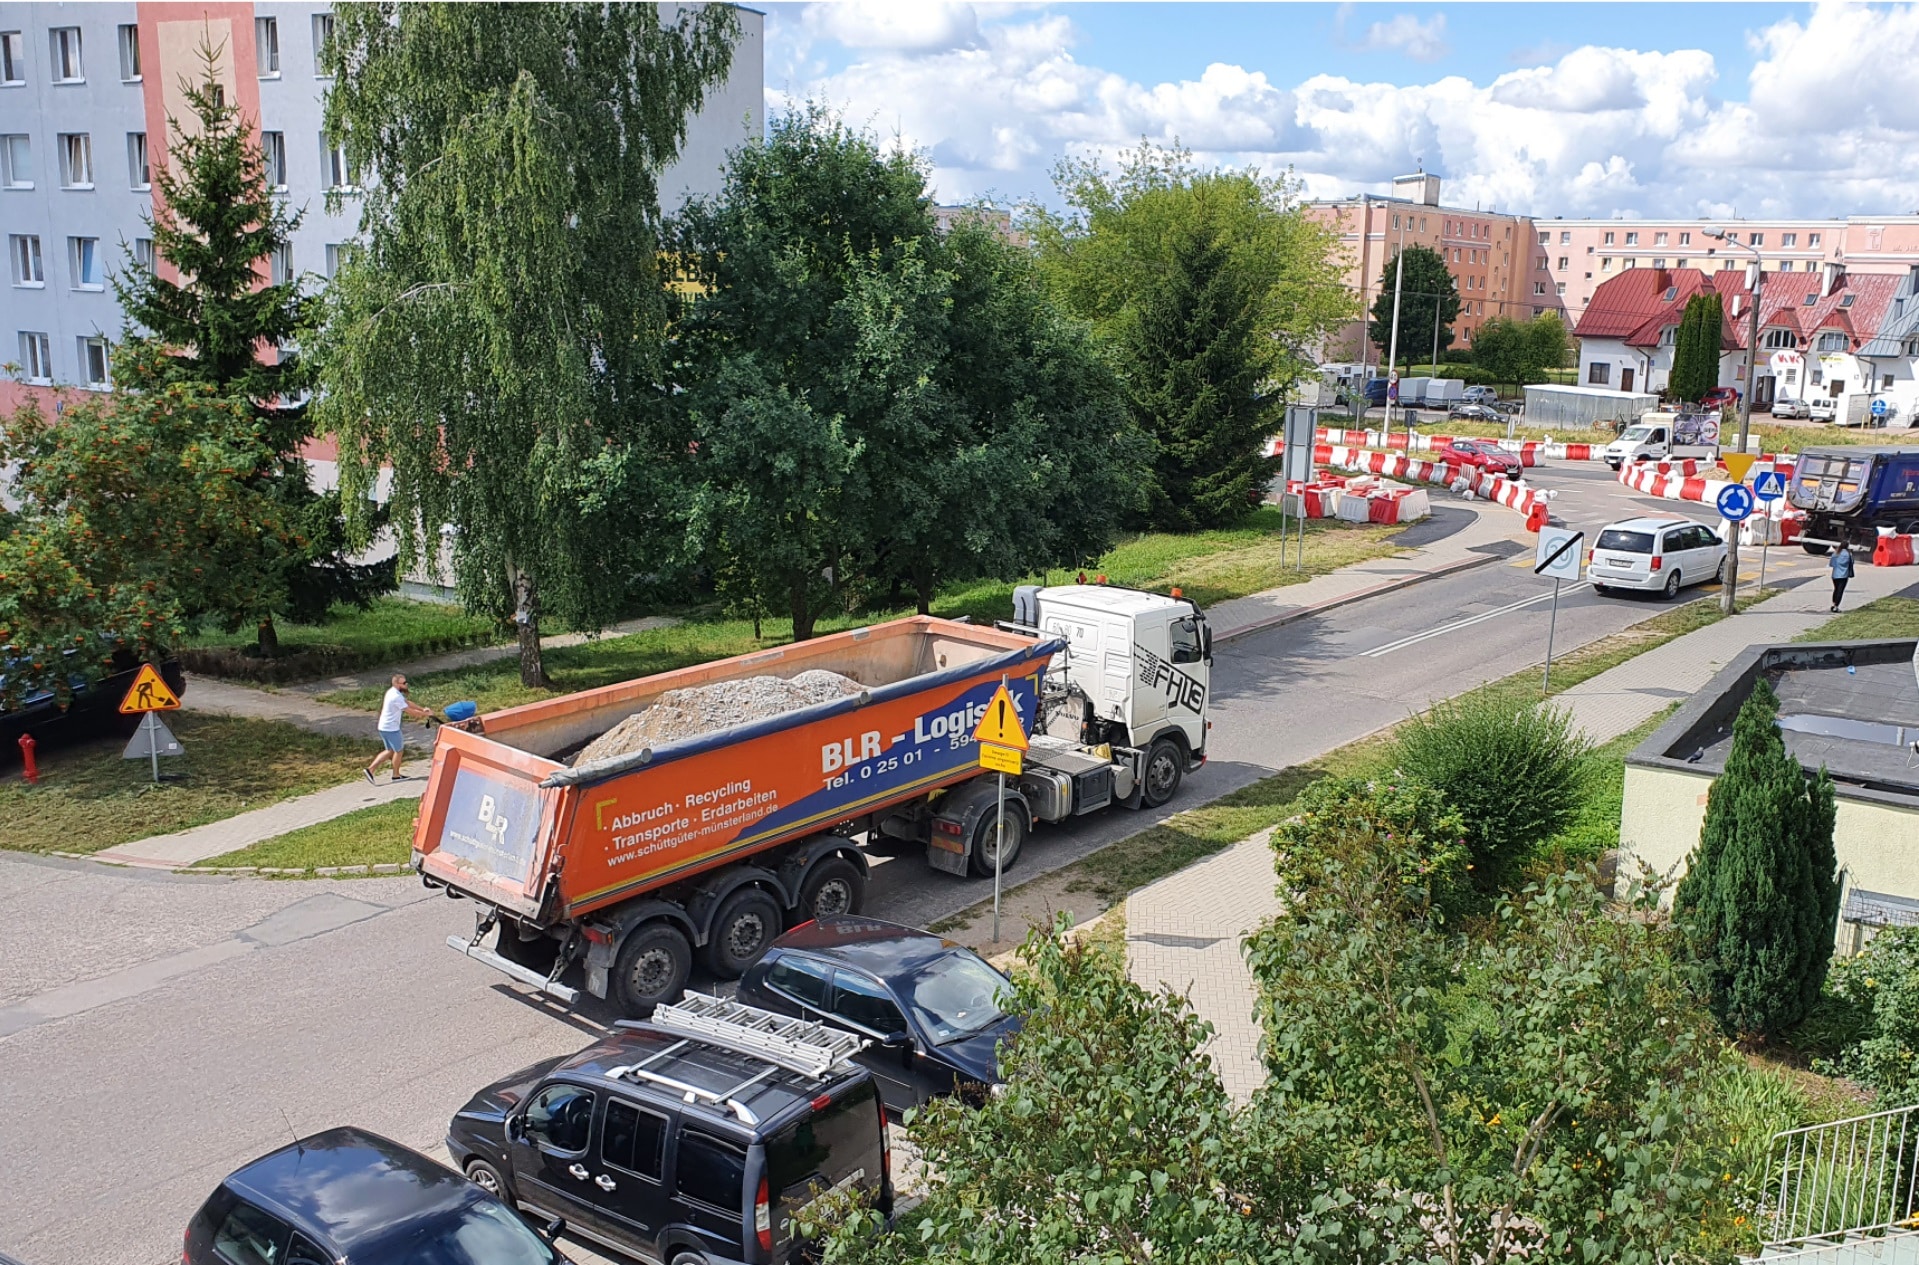 Rozbudowa linii tramwajowej. Mieszkańcy Pieczewa są oburzeni: "To jest czyste szaleństwo!" tramwaje Wiadomości, Olsztyn